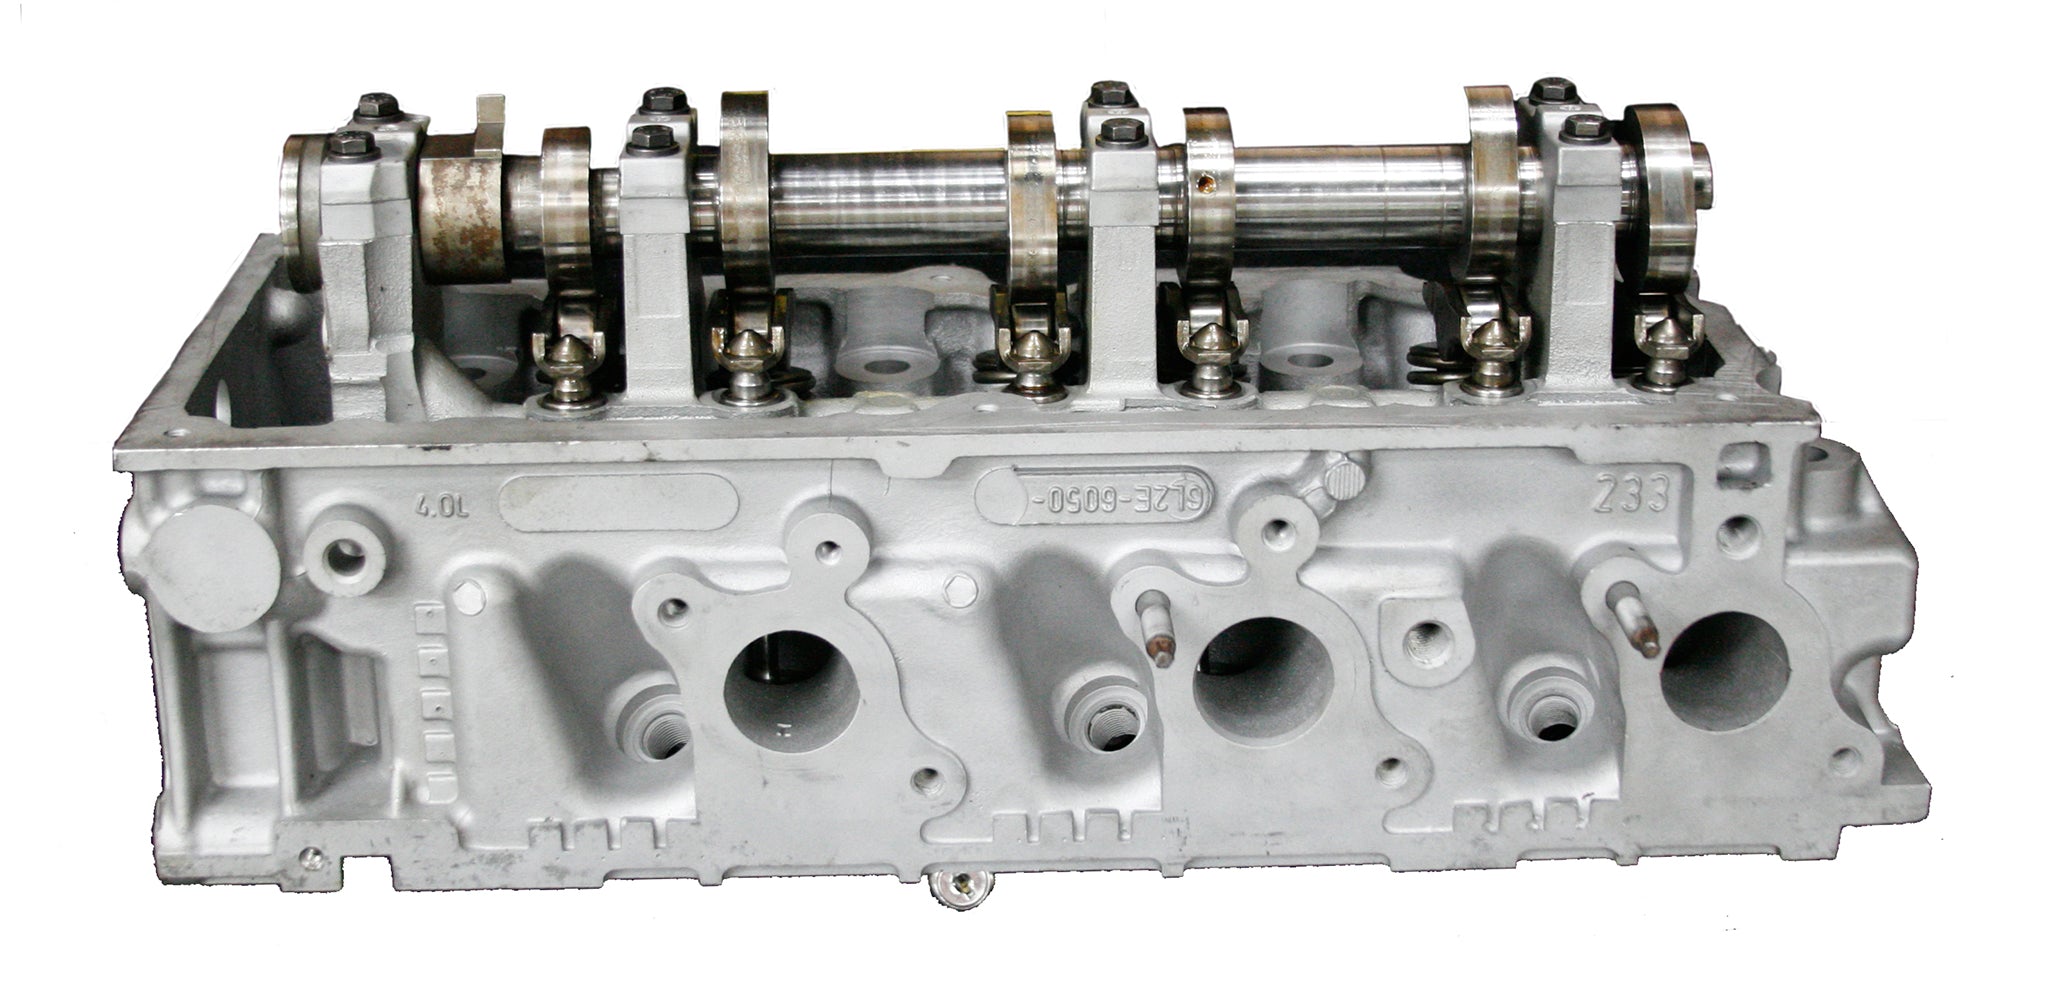 2007-2009 Ford 4.0L V6 SOHC rebuilt Cylinder head casting # 6L2E 6050 Left